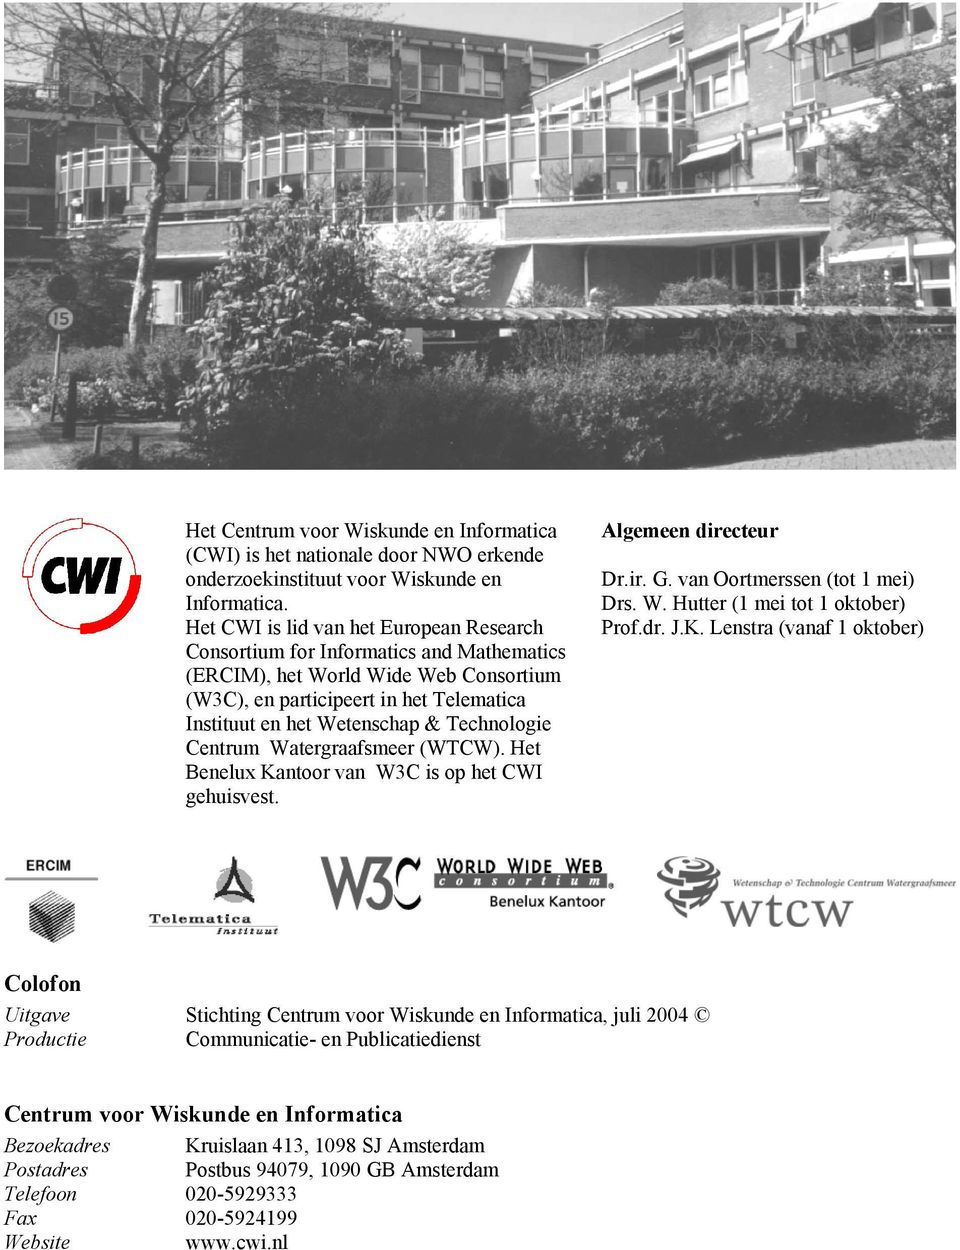 Technologie Centrum Watergraafsmeer (WTCW). Het Benelux Kantoor van W3C is op het CWI gehuisvest. Algemeen directeur Dr.ir. G. van Oortmerssen (tot 1 mei) Drs. W. Hutter (1 mei tot 1 oktober) Prof.dr.